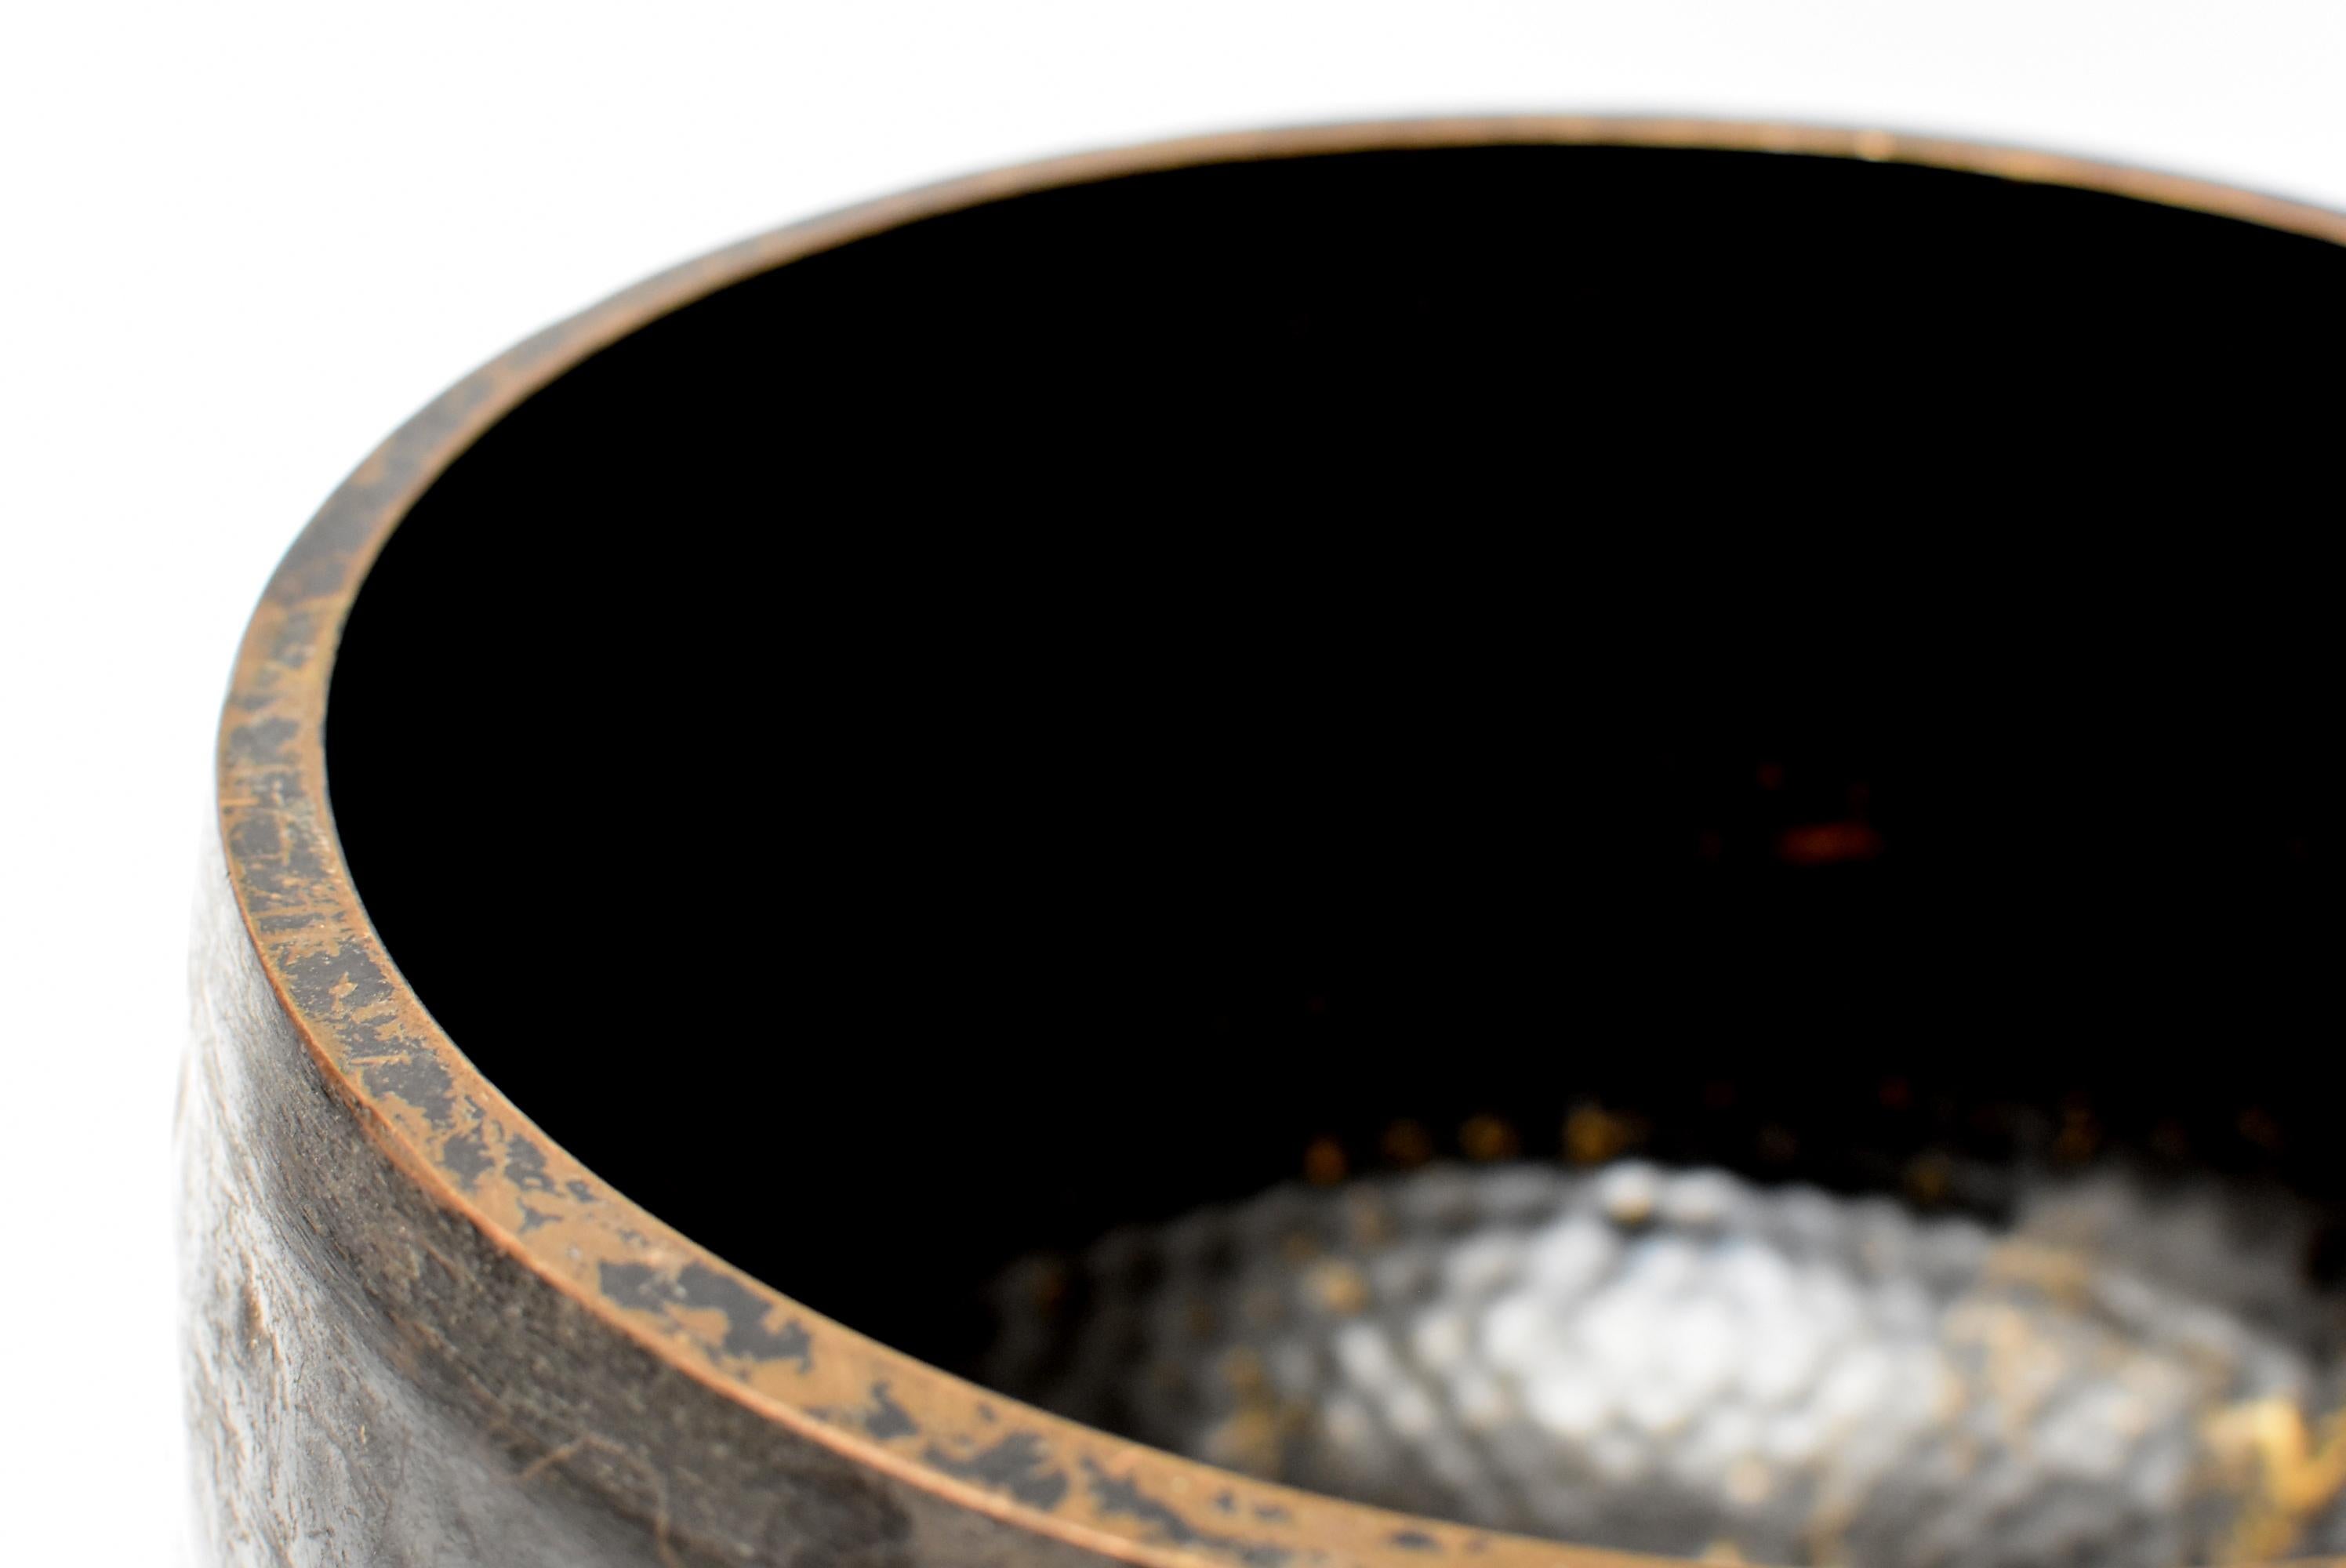 Large Japanese Antique Bronze Singing Bowl 1, Black, Hand Hammered 7